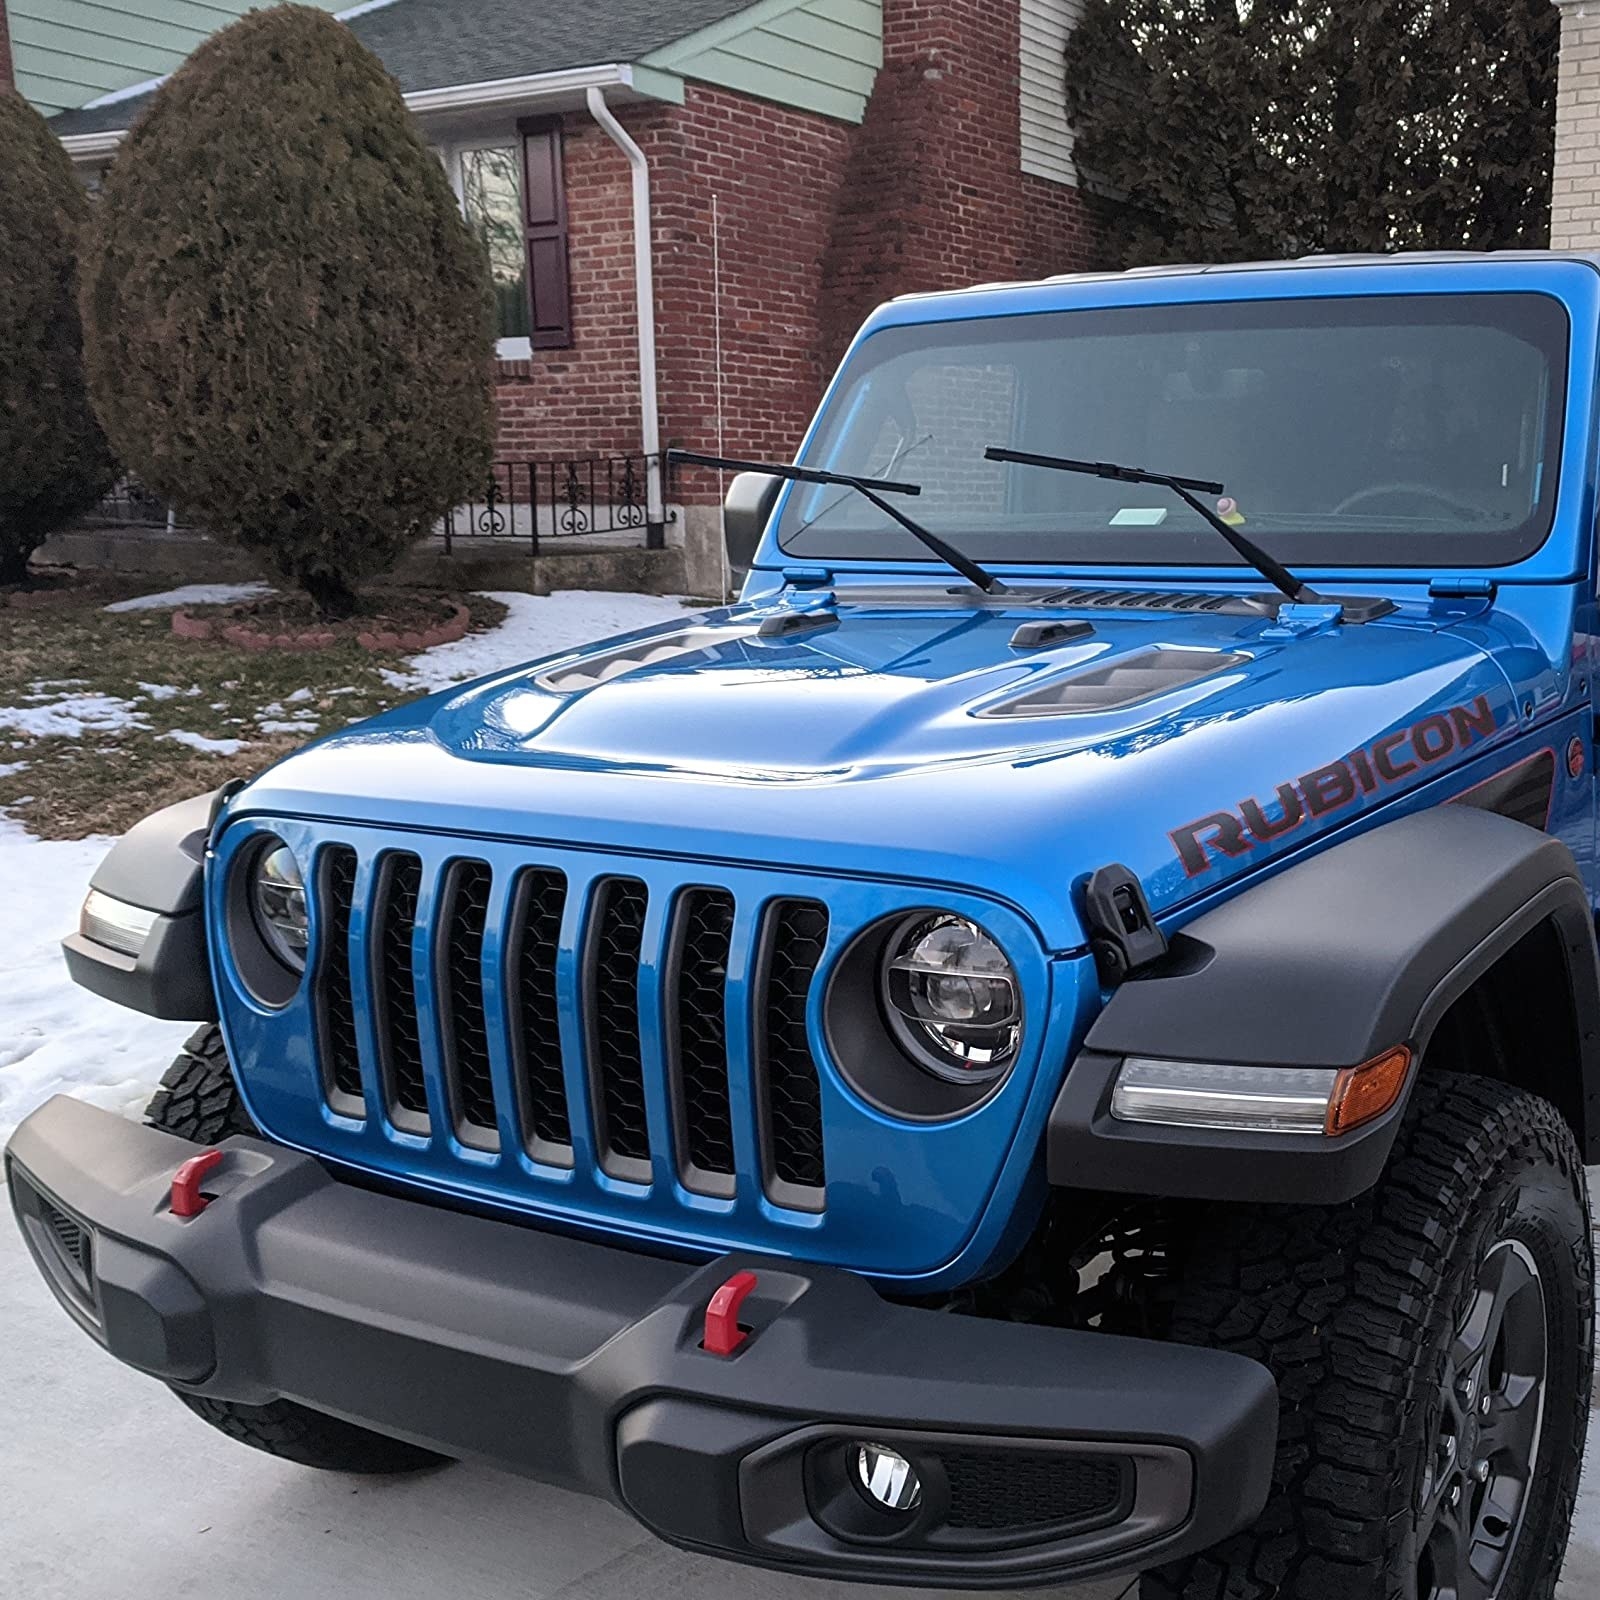 a shiny blue Jeep